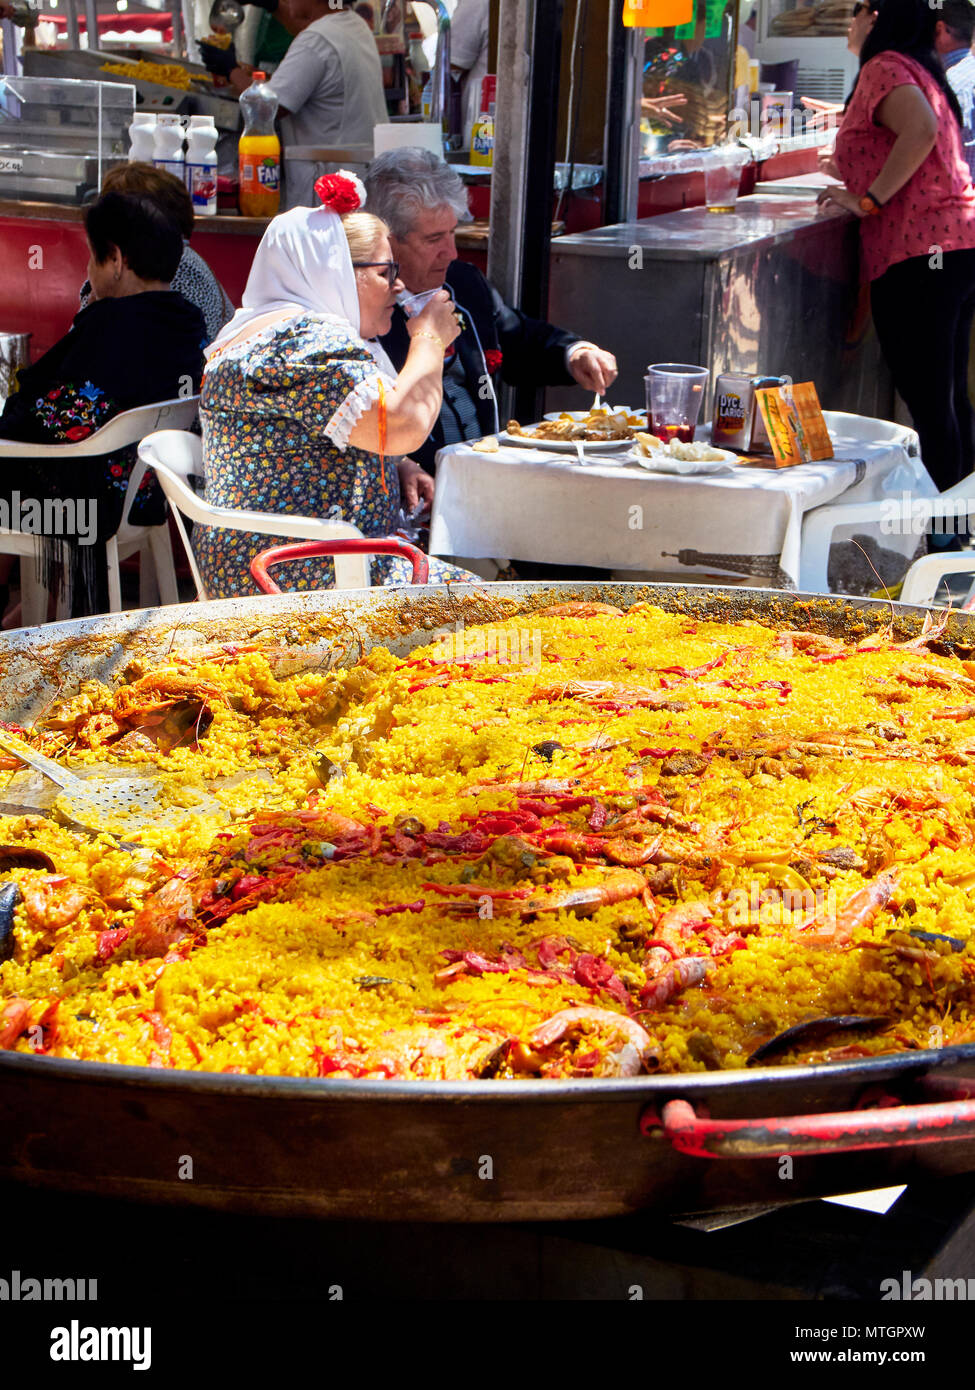 Madrid, Espagne - 15 mai 2018. Habillés comme des citoyens Chulapos manger la Paella espagnole dans un stand à gastronomique fête de San Isidro Labrador, dans Prader Banque D'Images